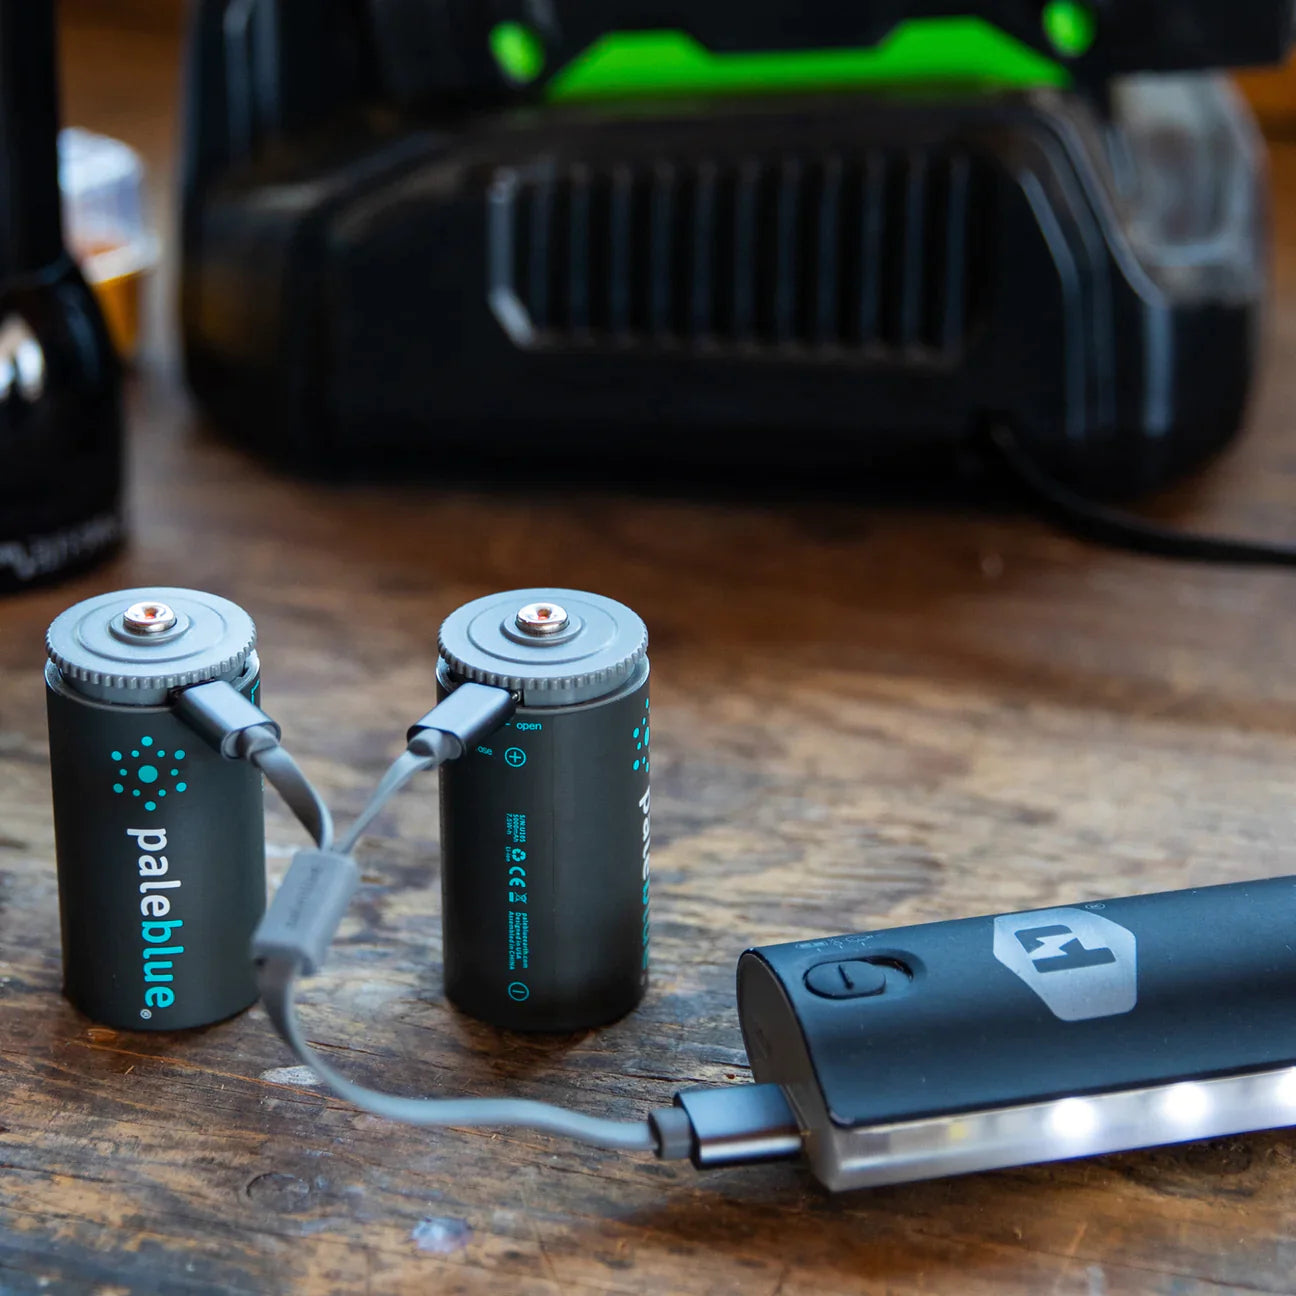 D USB-C Rechargeable Smart Batteries - (2-pack)